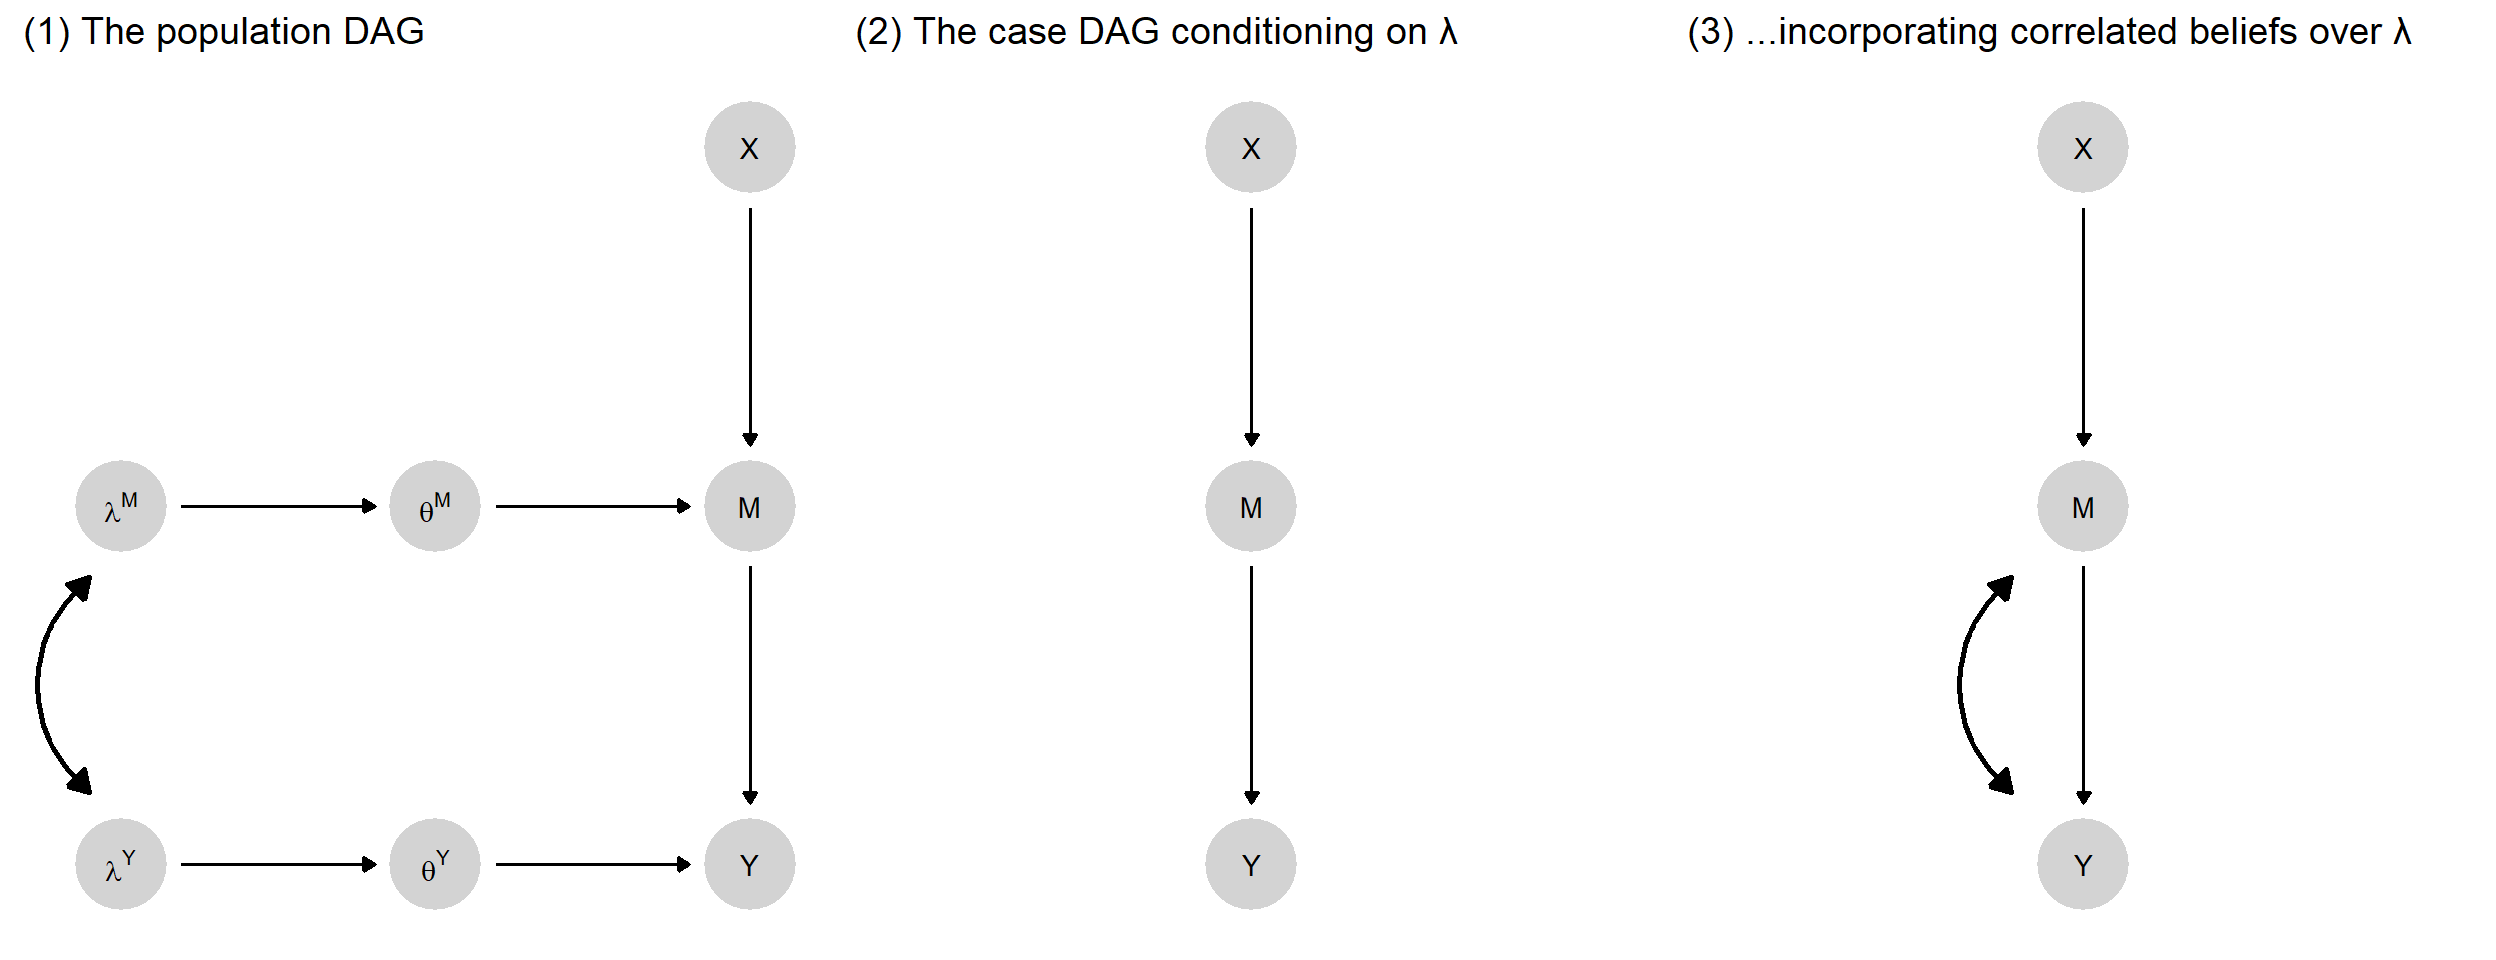 $d$-connectedness via correlations in beliefs over $\lambda$